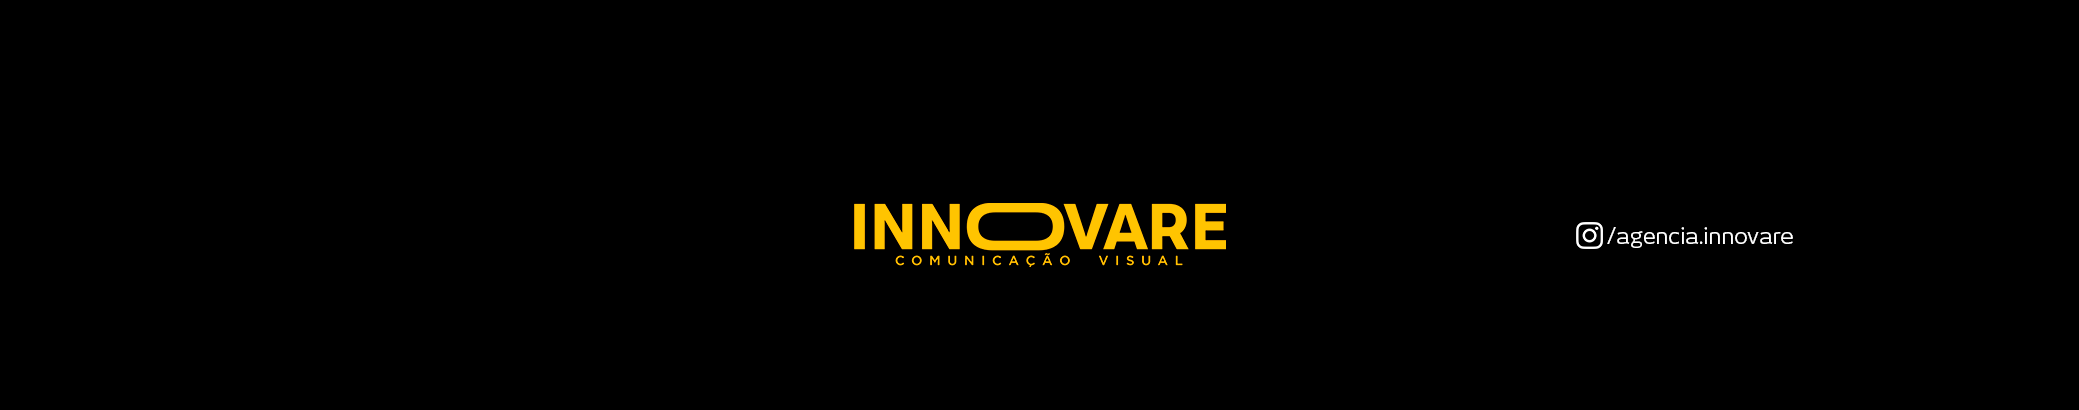 Agencia Innovare ✪'s profile banner